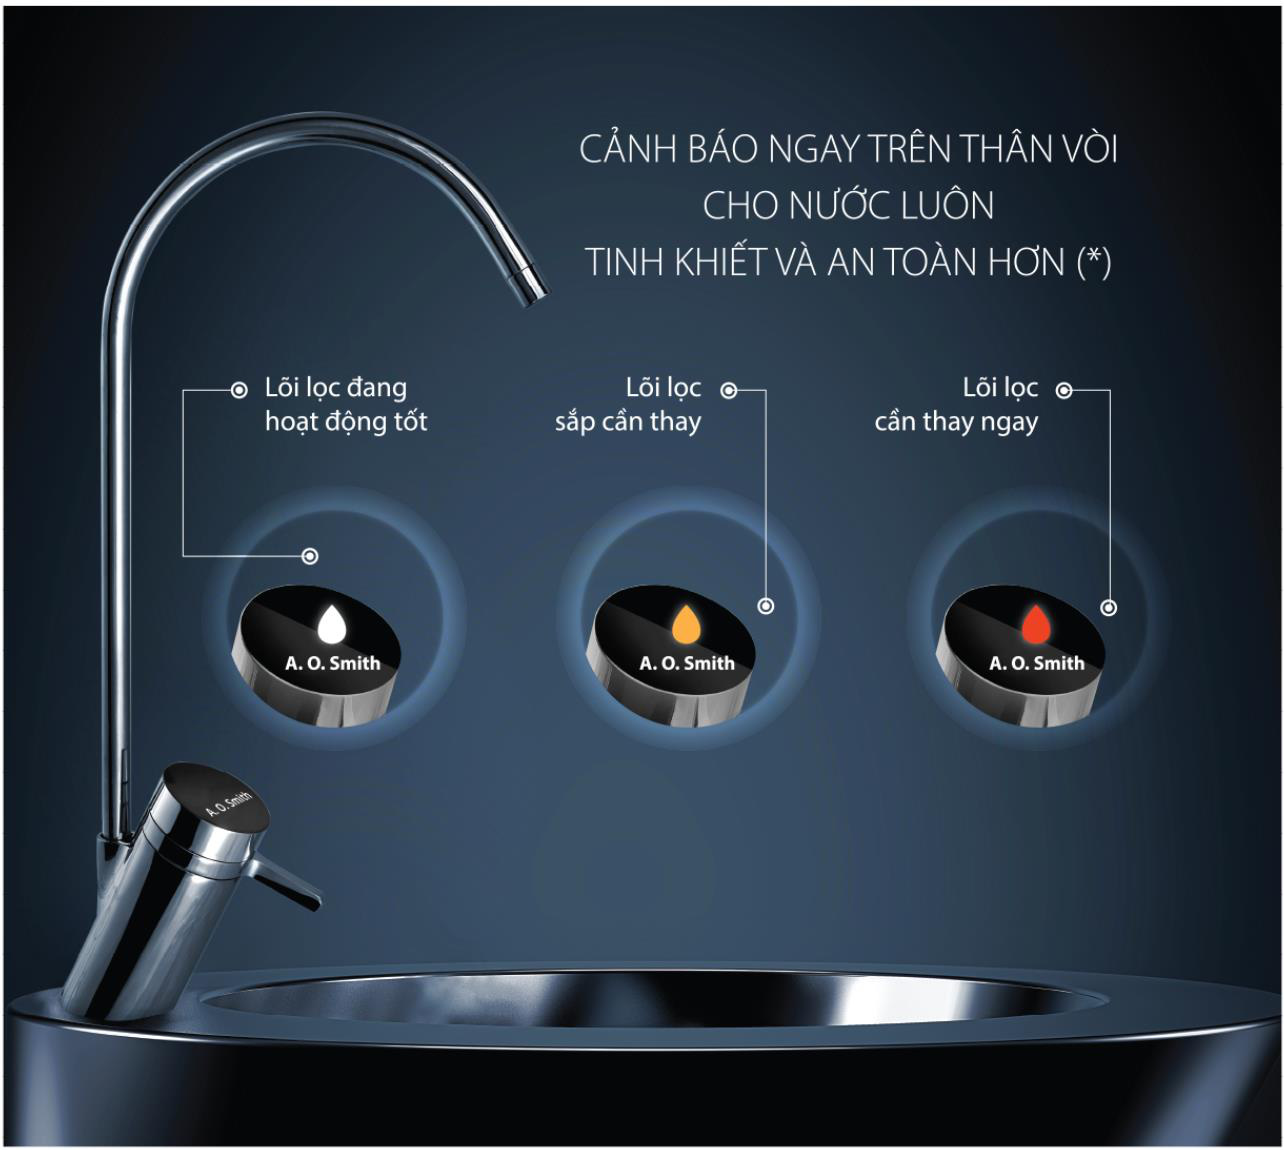 Sử dụng máy lọc nước sai cách, rất nhiều người nghĩ bình thường nhưng có thể gây “đại họa” cho sức khỏe - 5